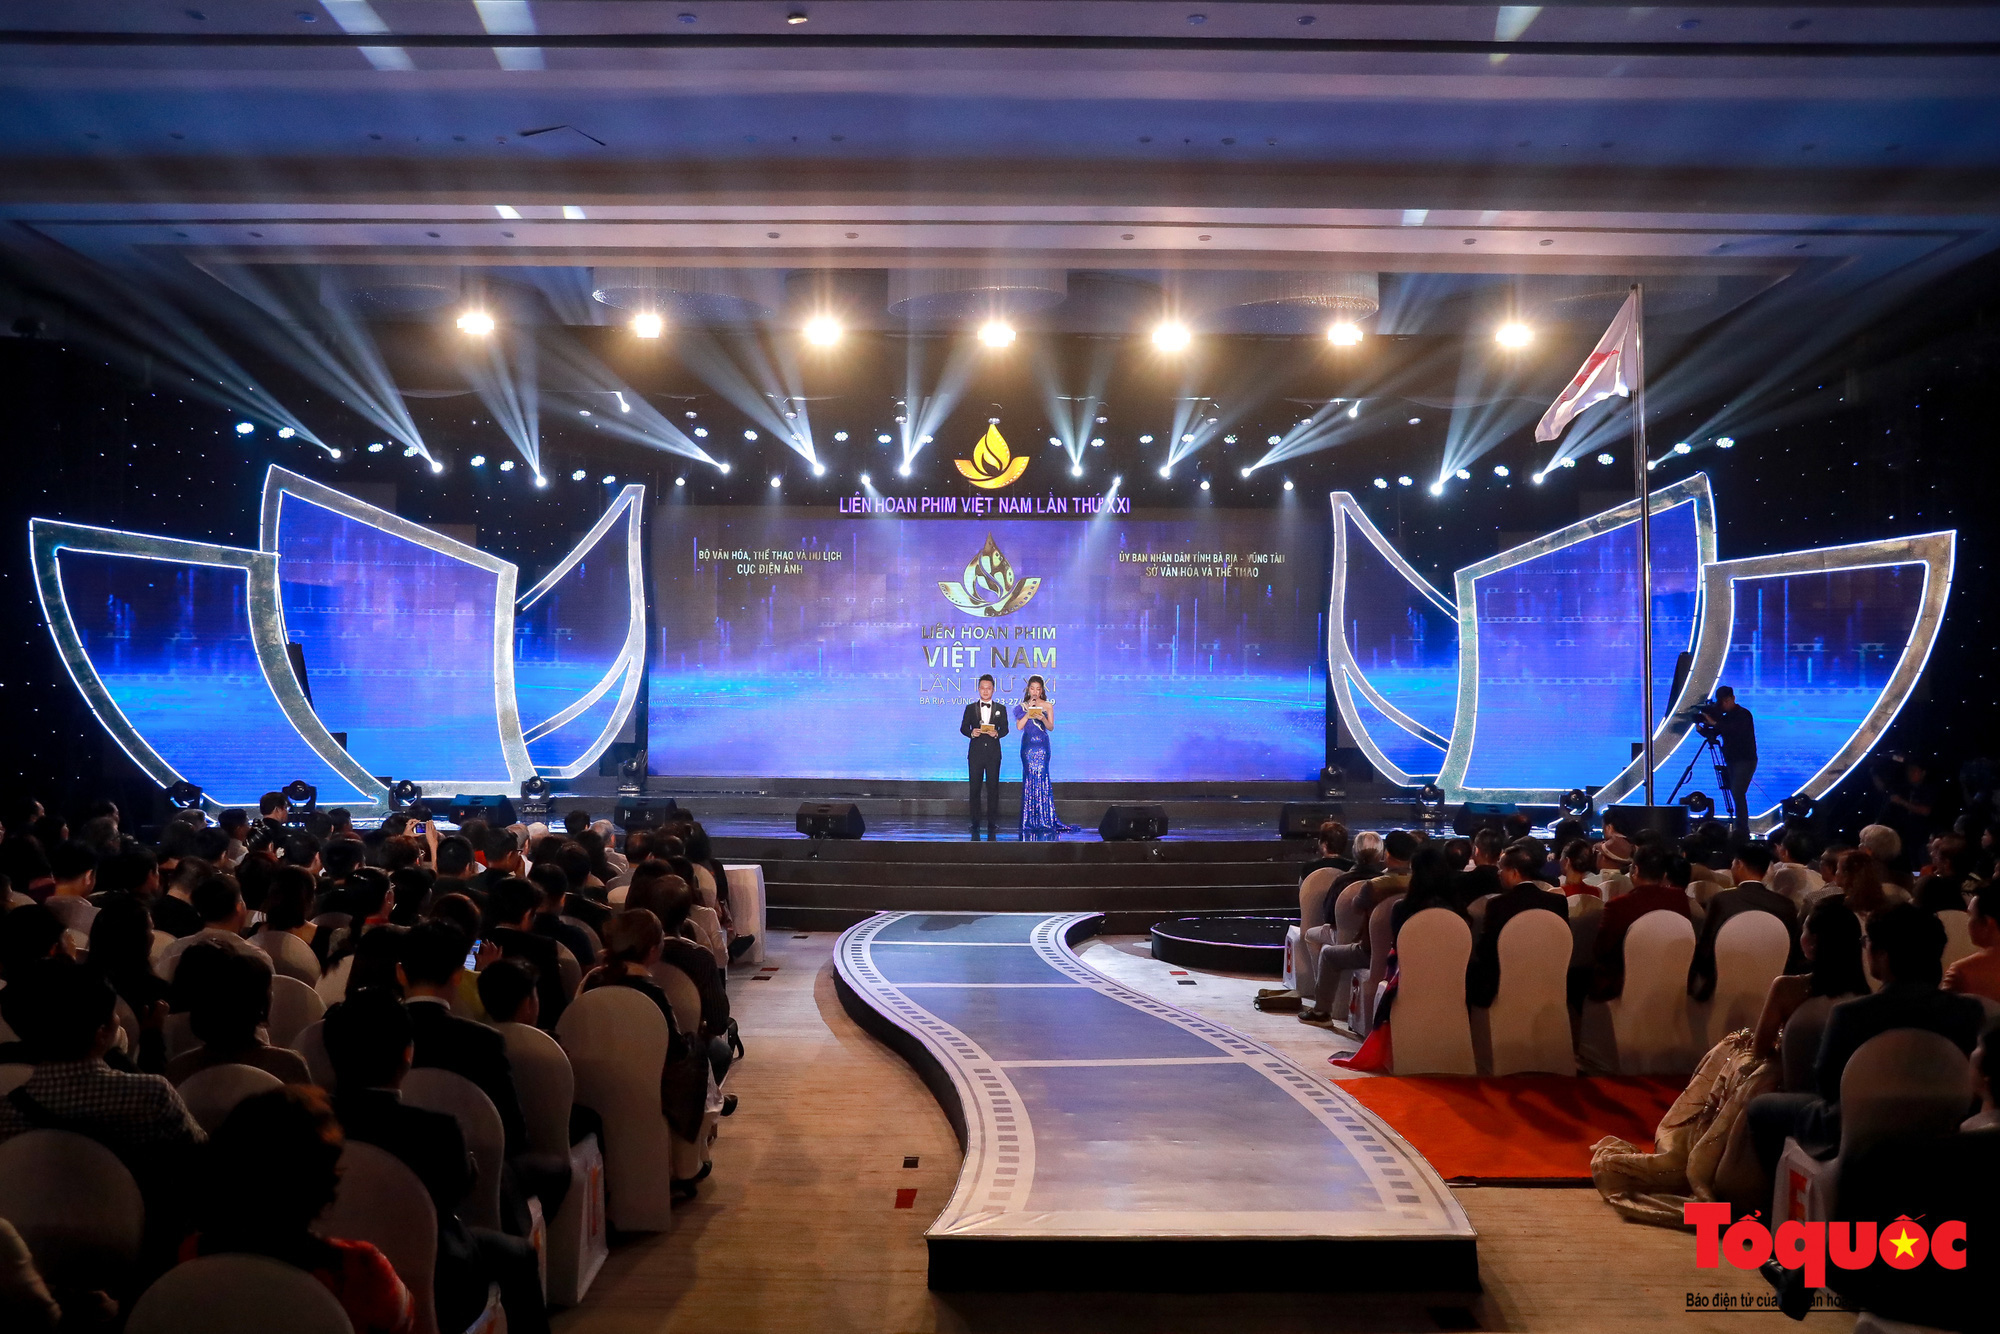 Đưa Liên hoan phim Việt Nam trở thành thương hiệu quốc gia trong lĩnh vực điện ảnh - Ảnh 2.